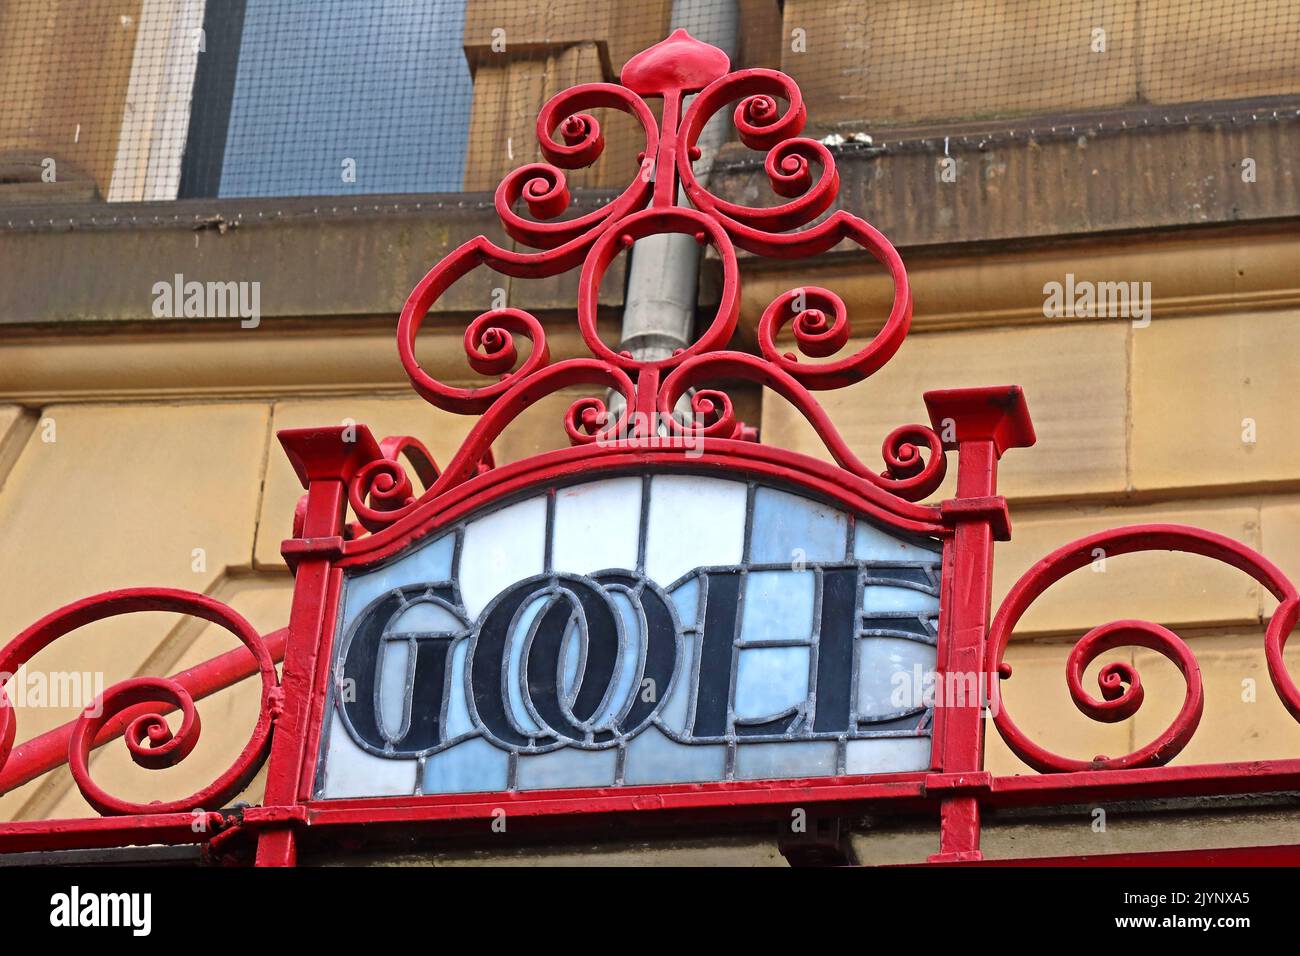 Goole: Jugendstil, Schriftzüge, Wörter, die M&LR- und L&YR-Ziele auf einem kunstvollen Glas- und Eisendach zeigen, Bahnhof Manchester Victoria Stockfoto